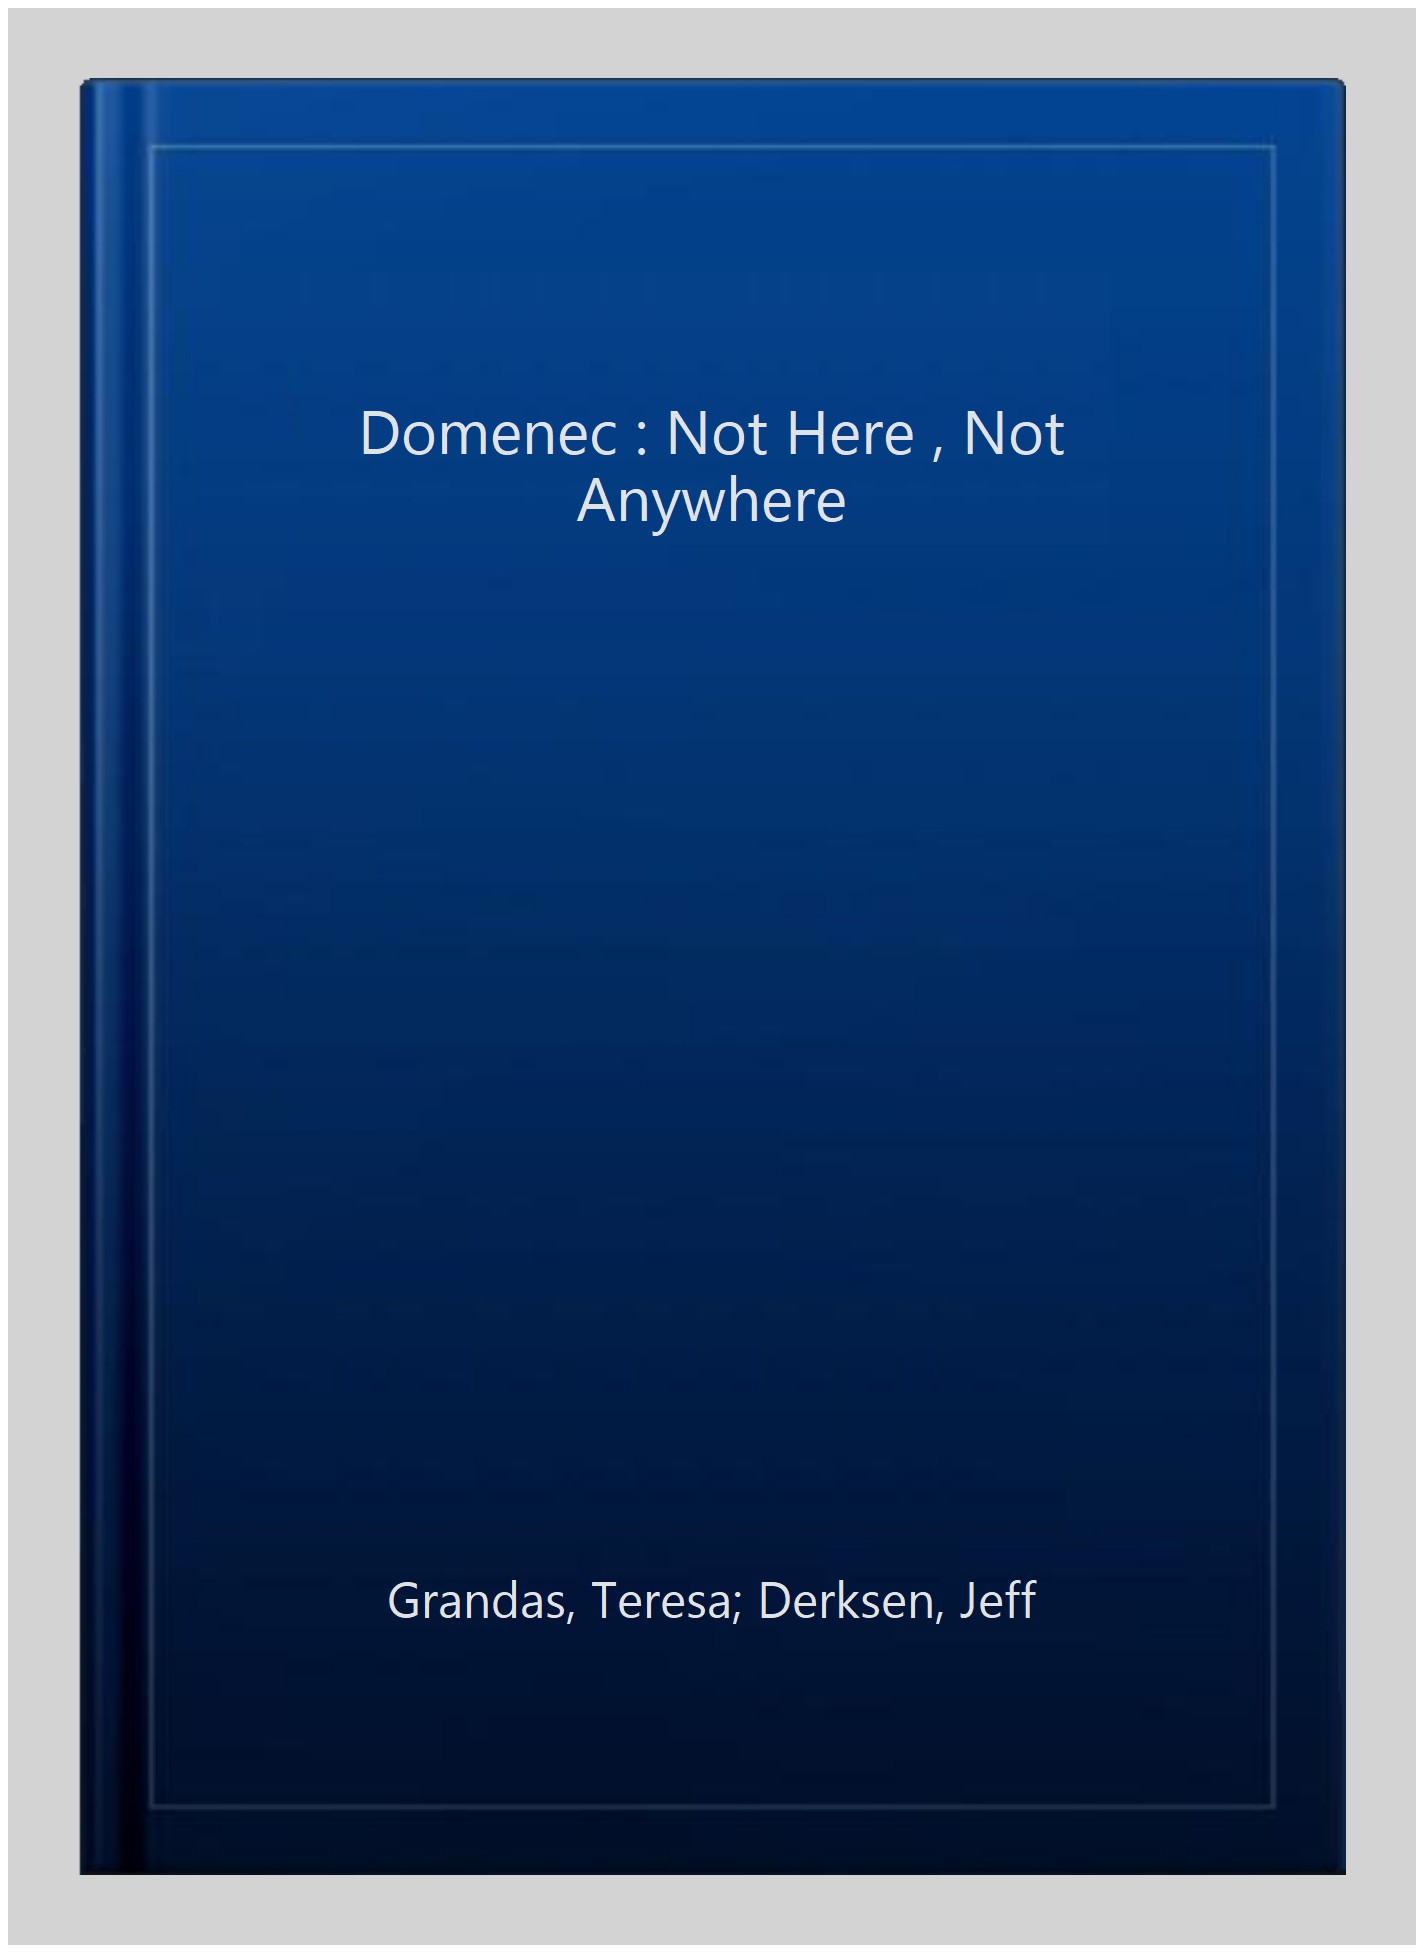 Domenec : Not Here , Not Anywhere -Language: catalan - Grandas, Teresa; Derksen, Jeff; Peran, Marti